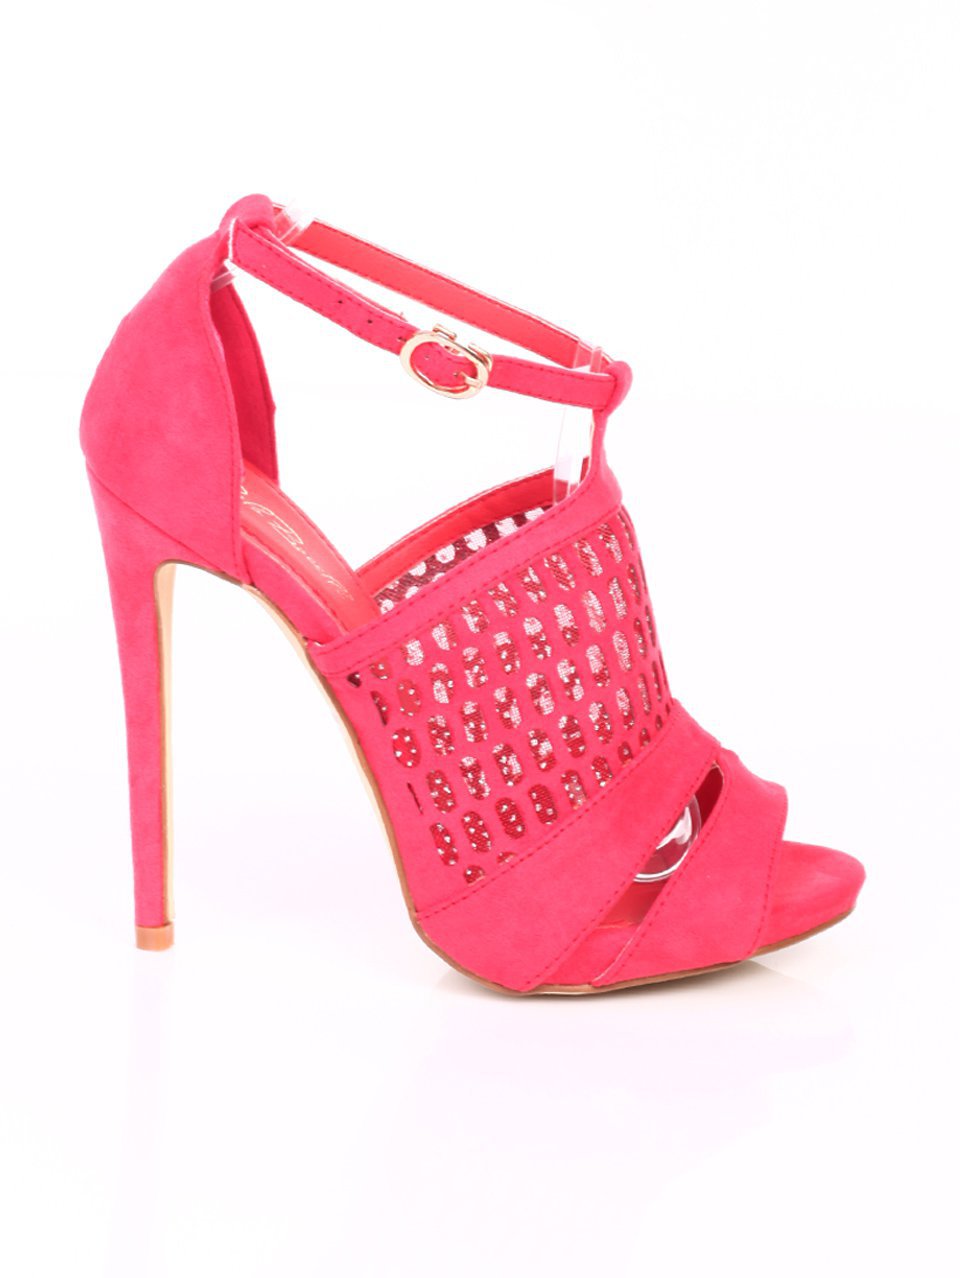 Елегантни дамски сандали на ток в червено 4M-15066 red